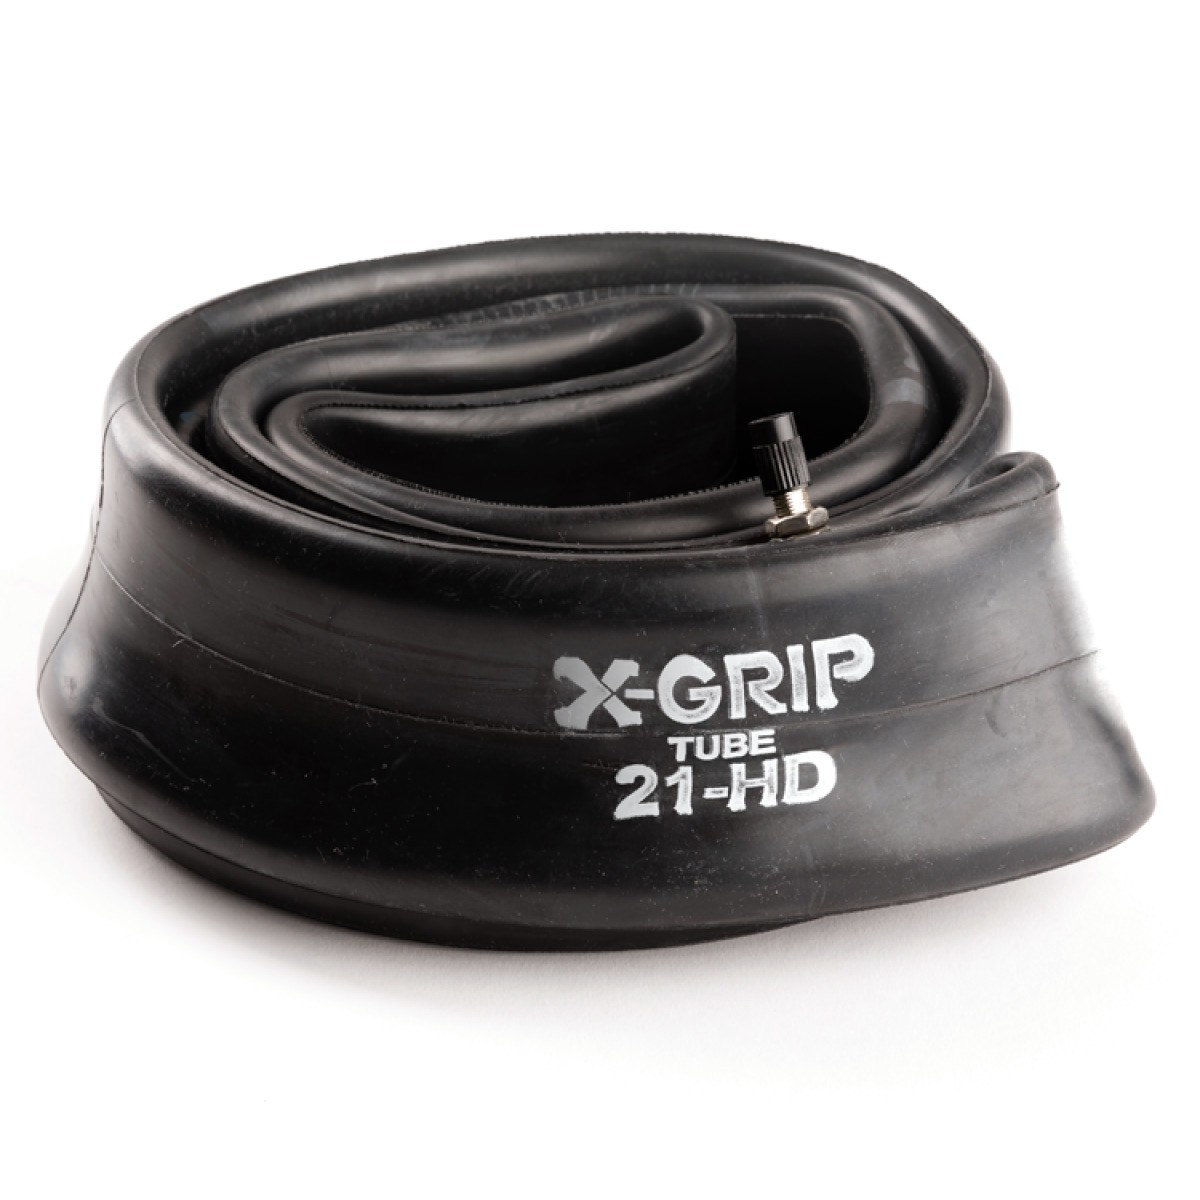 X-GRIP Schlauch 21-HD 21'' (vorne)  4 mm Materialstärke